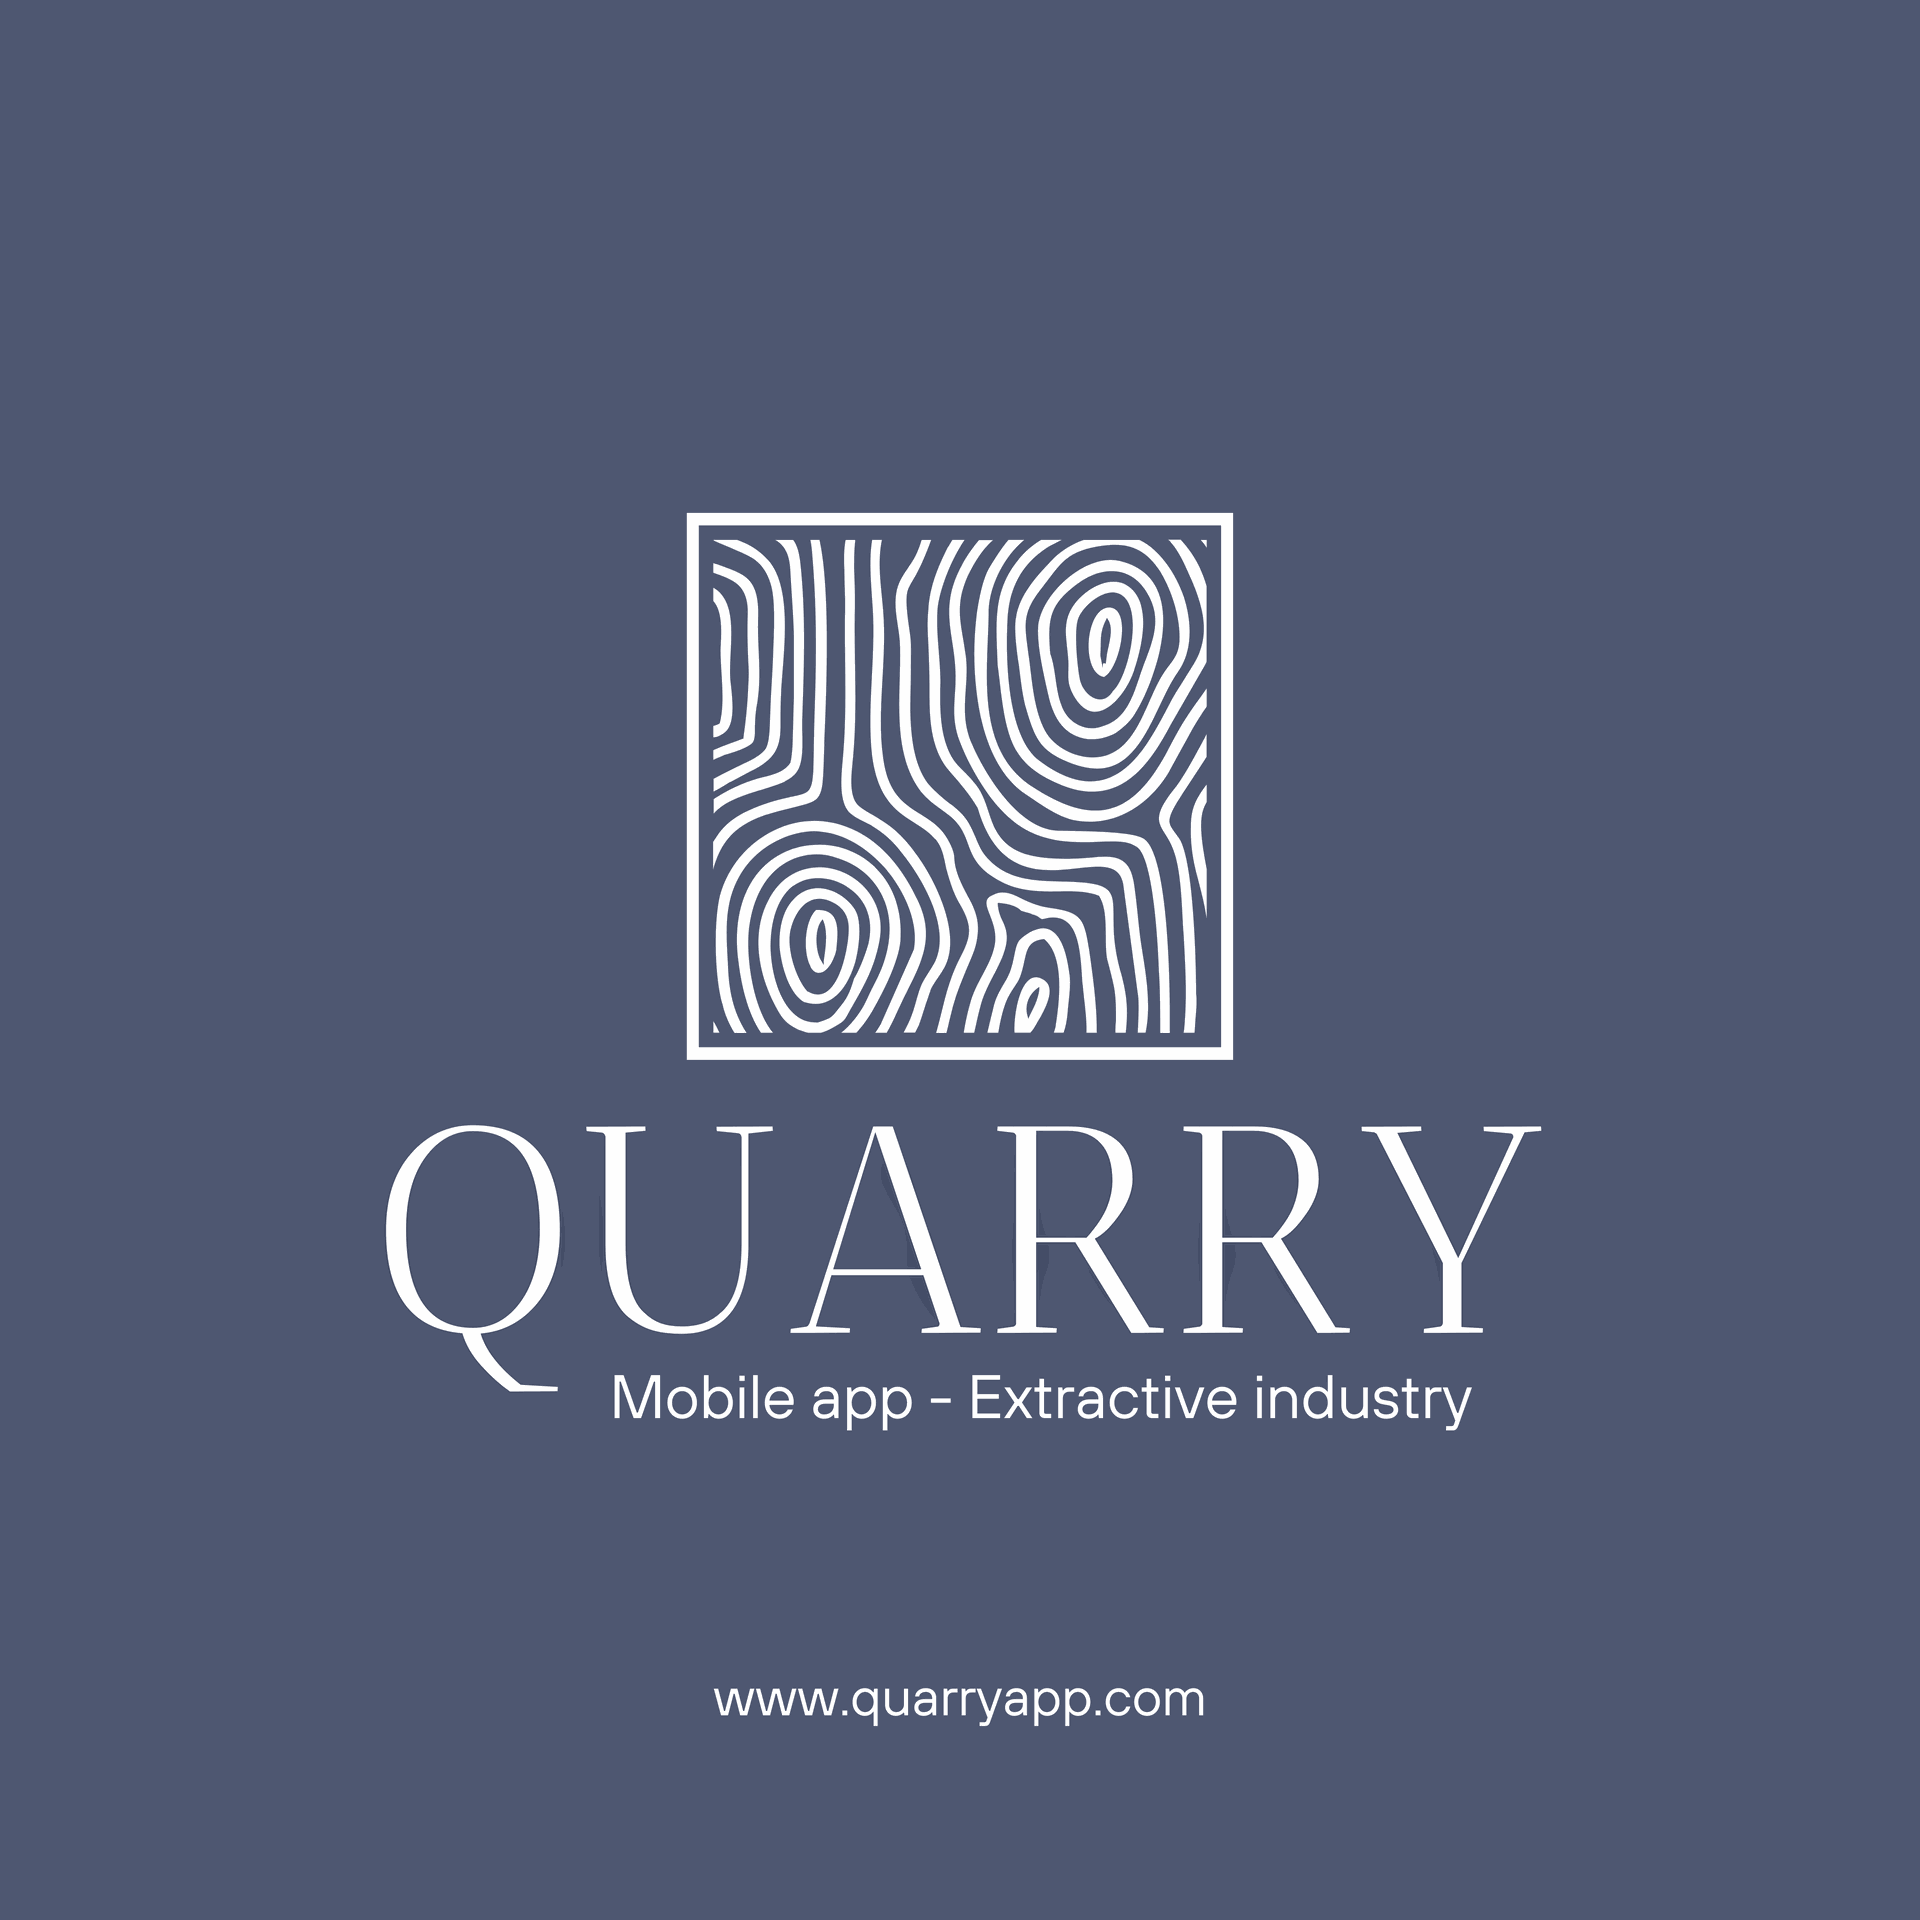 Quarry mobile app